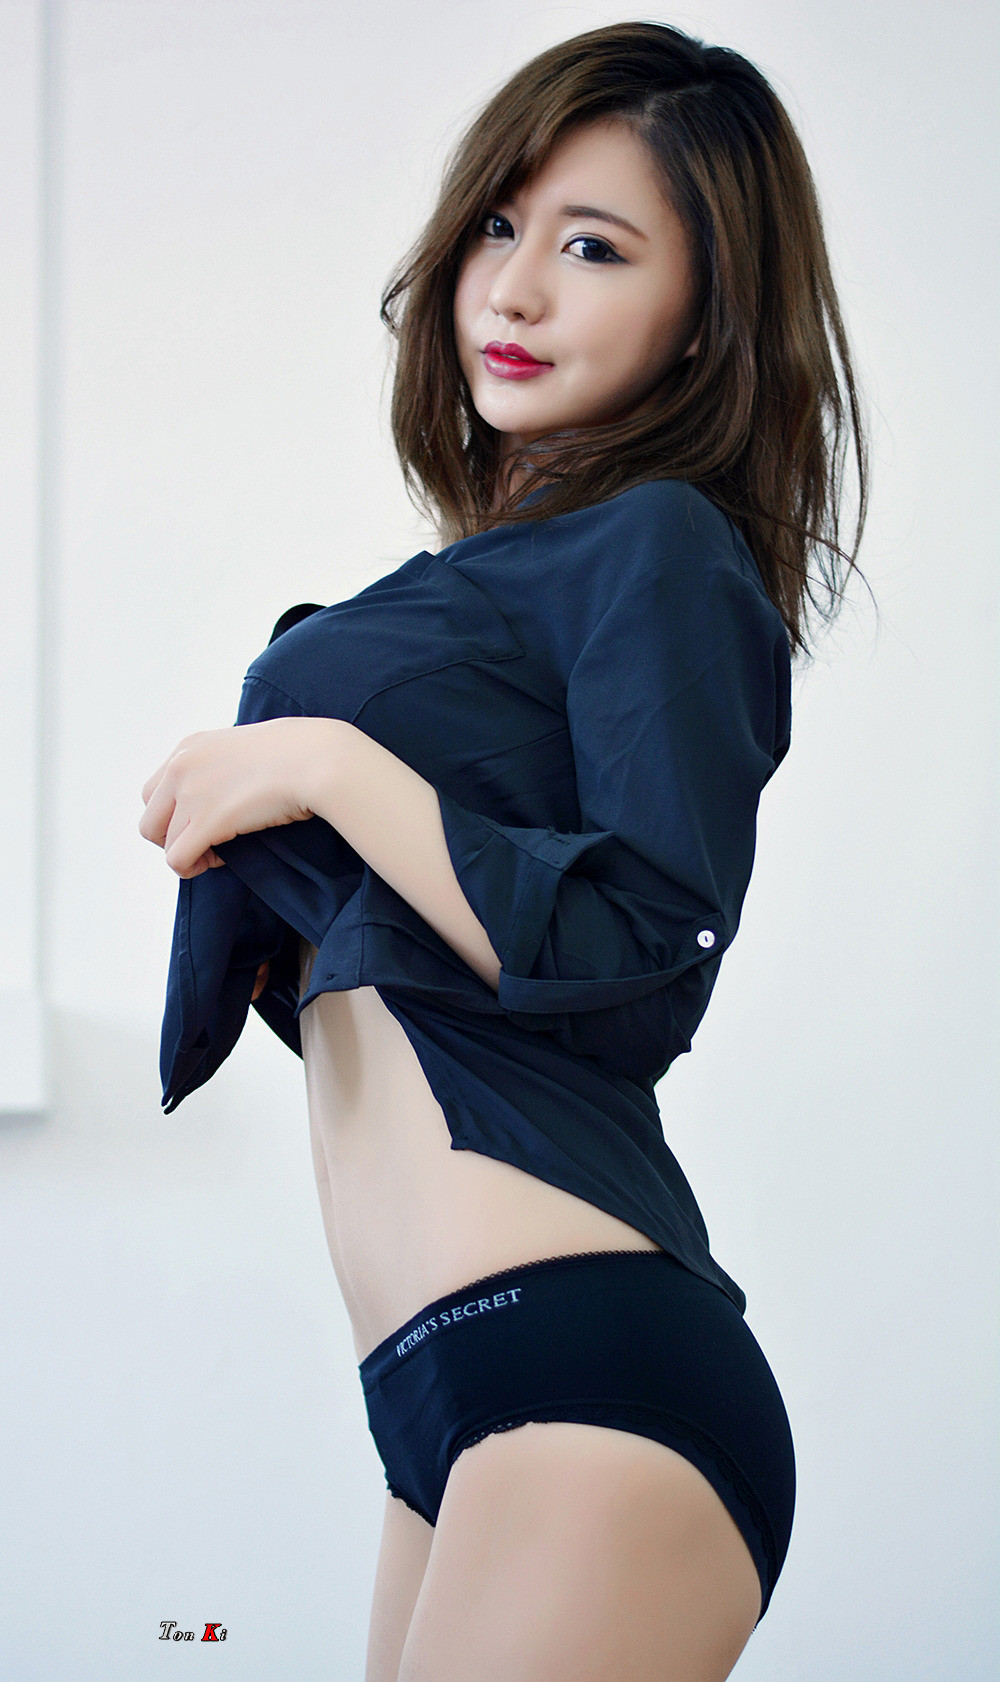 韩国挺胸美女着内裤写极品销魂图片写真